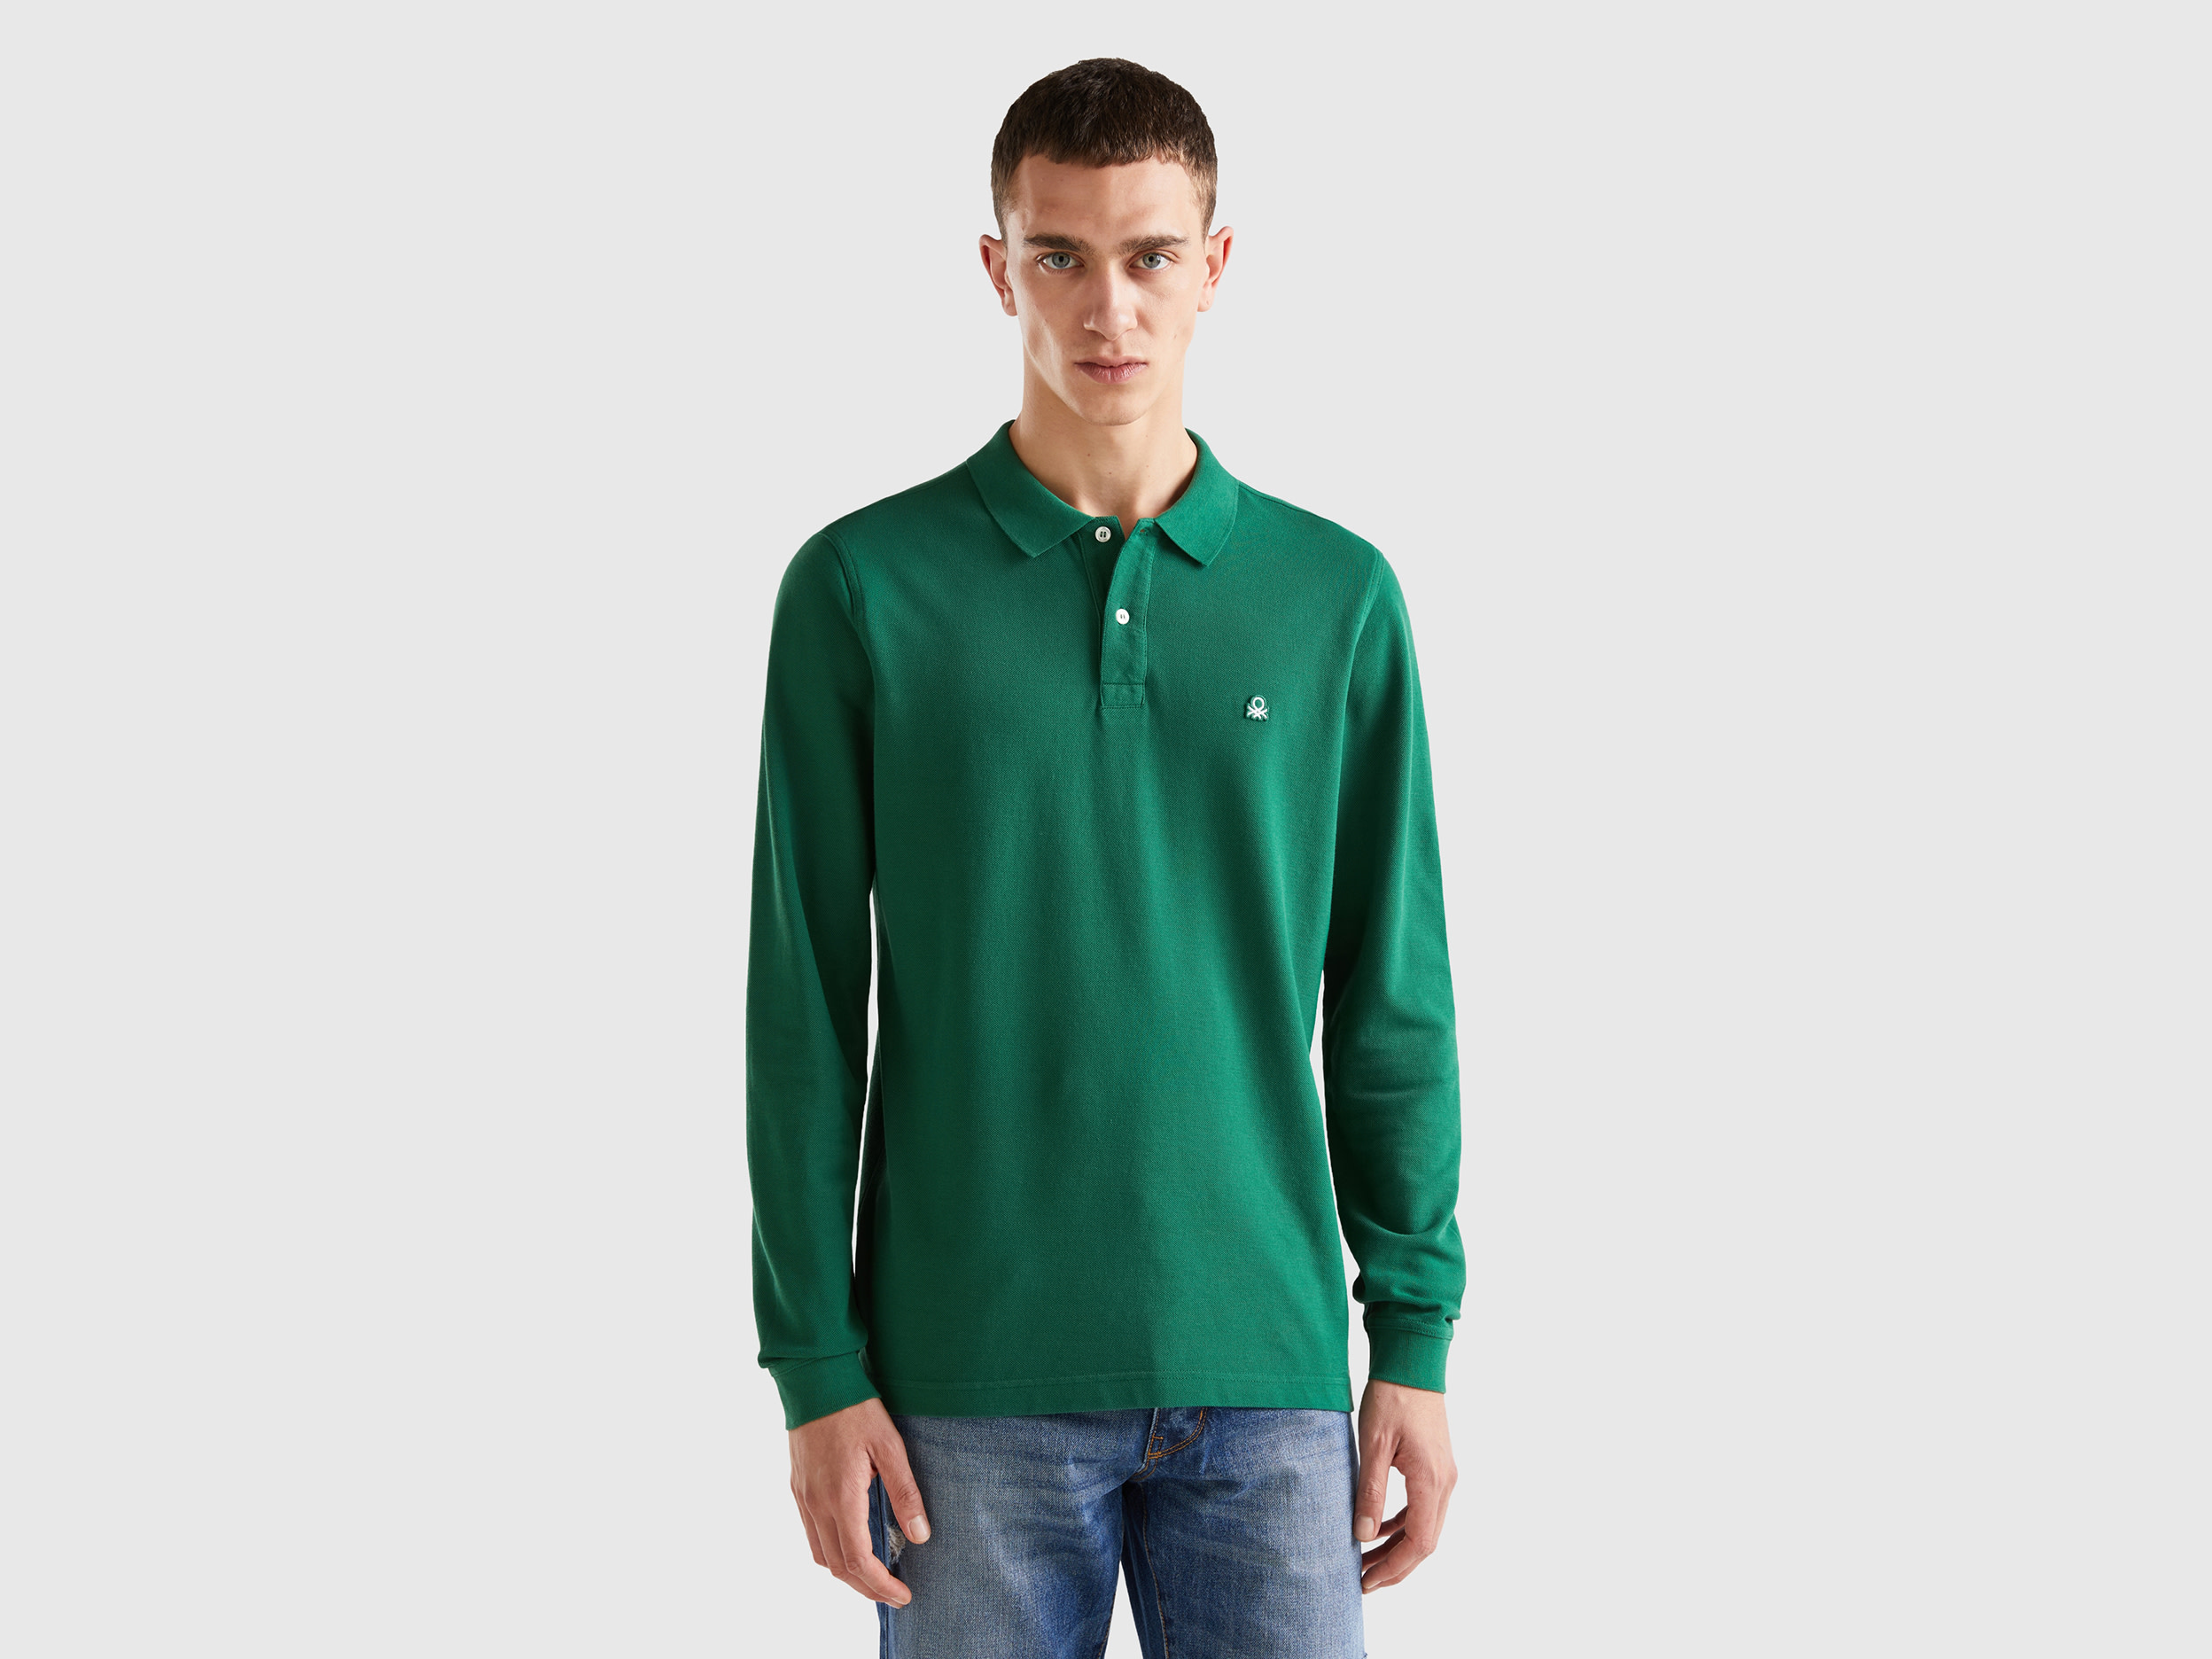 Benetton, Long Sleeve 100% Cotton Polo, size XXL, Dark Green, Men